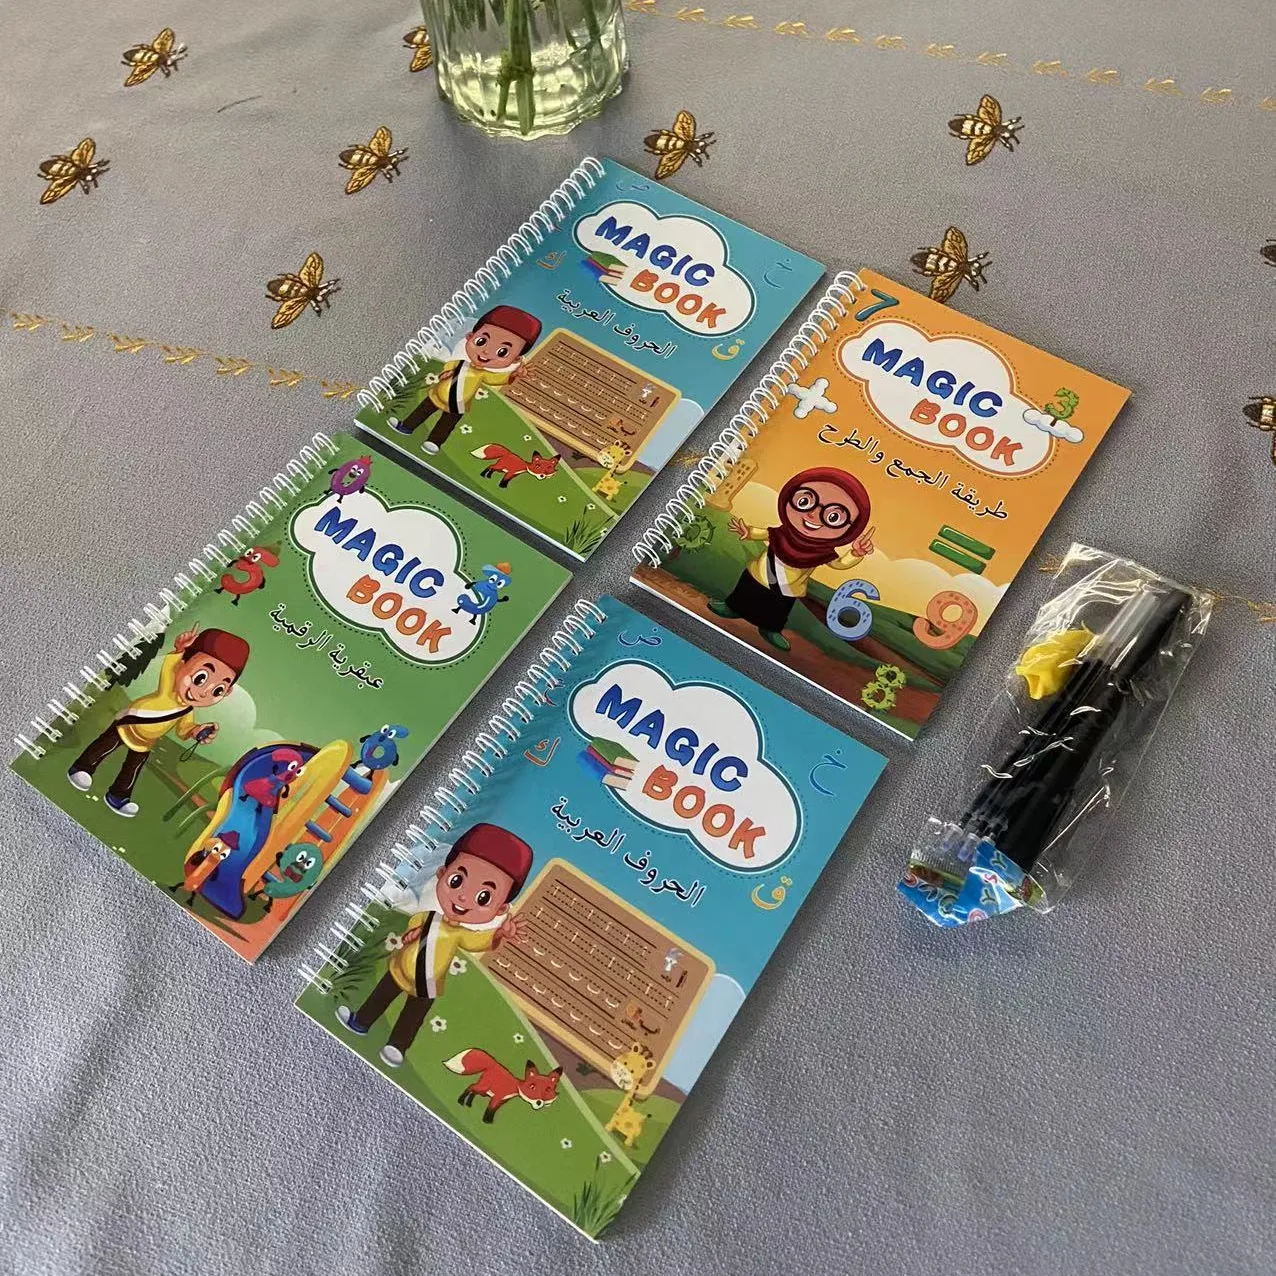 Arabo affondato libro magico per bambini libri di pratica di scrittura riutilizzabili set libri di calligrafia di apprendimento educativo con penna